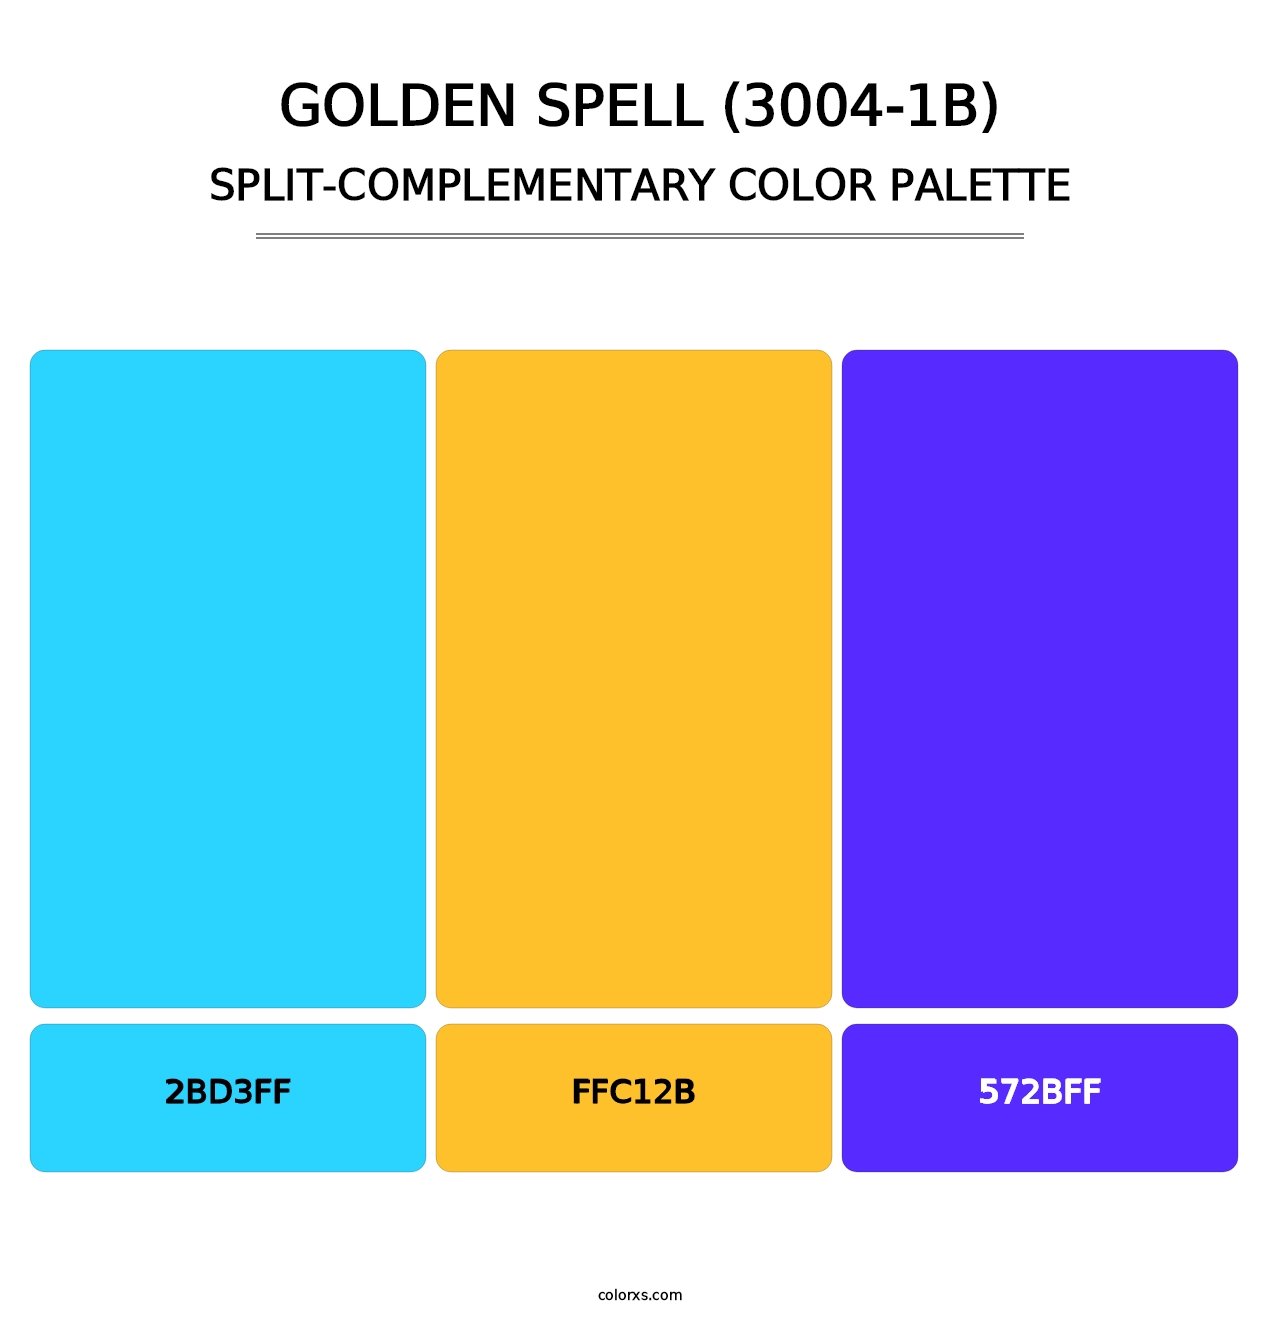 Golden Spell (3004-1B) - Split-Complementary Color Palette